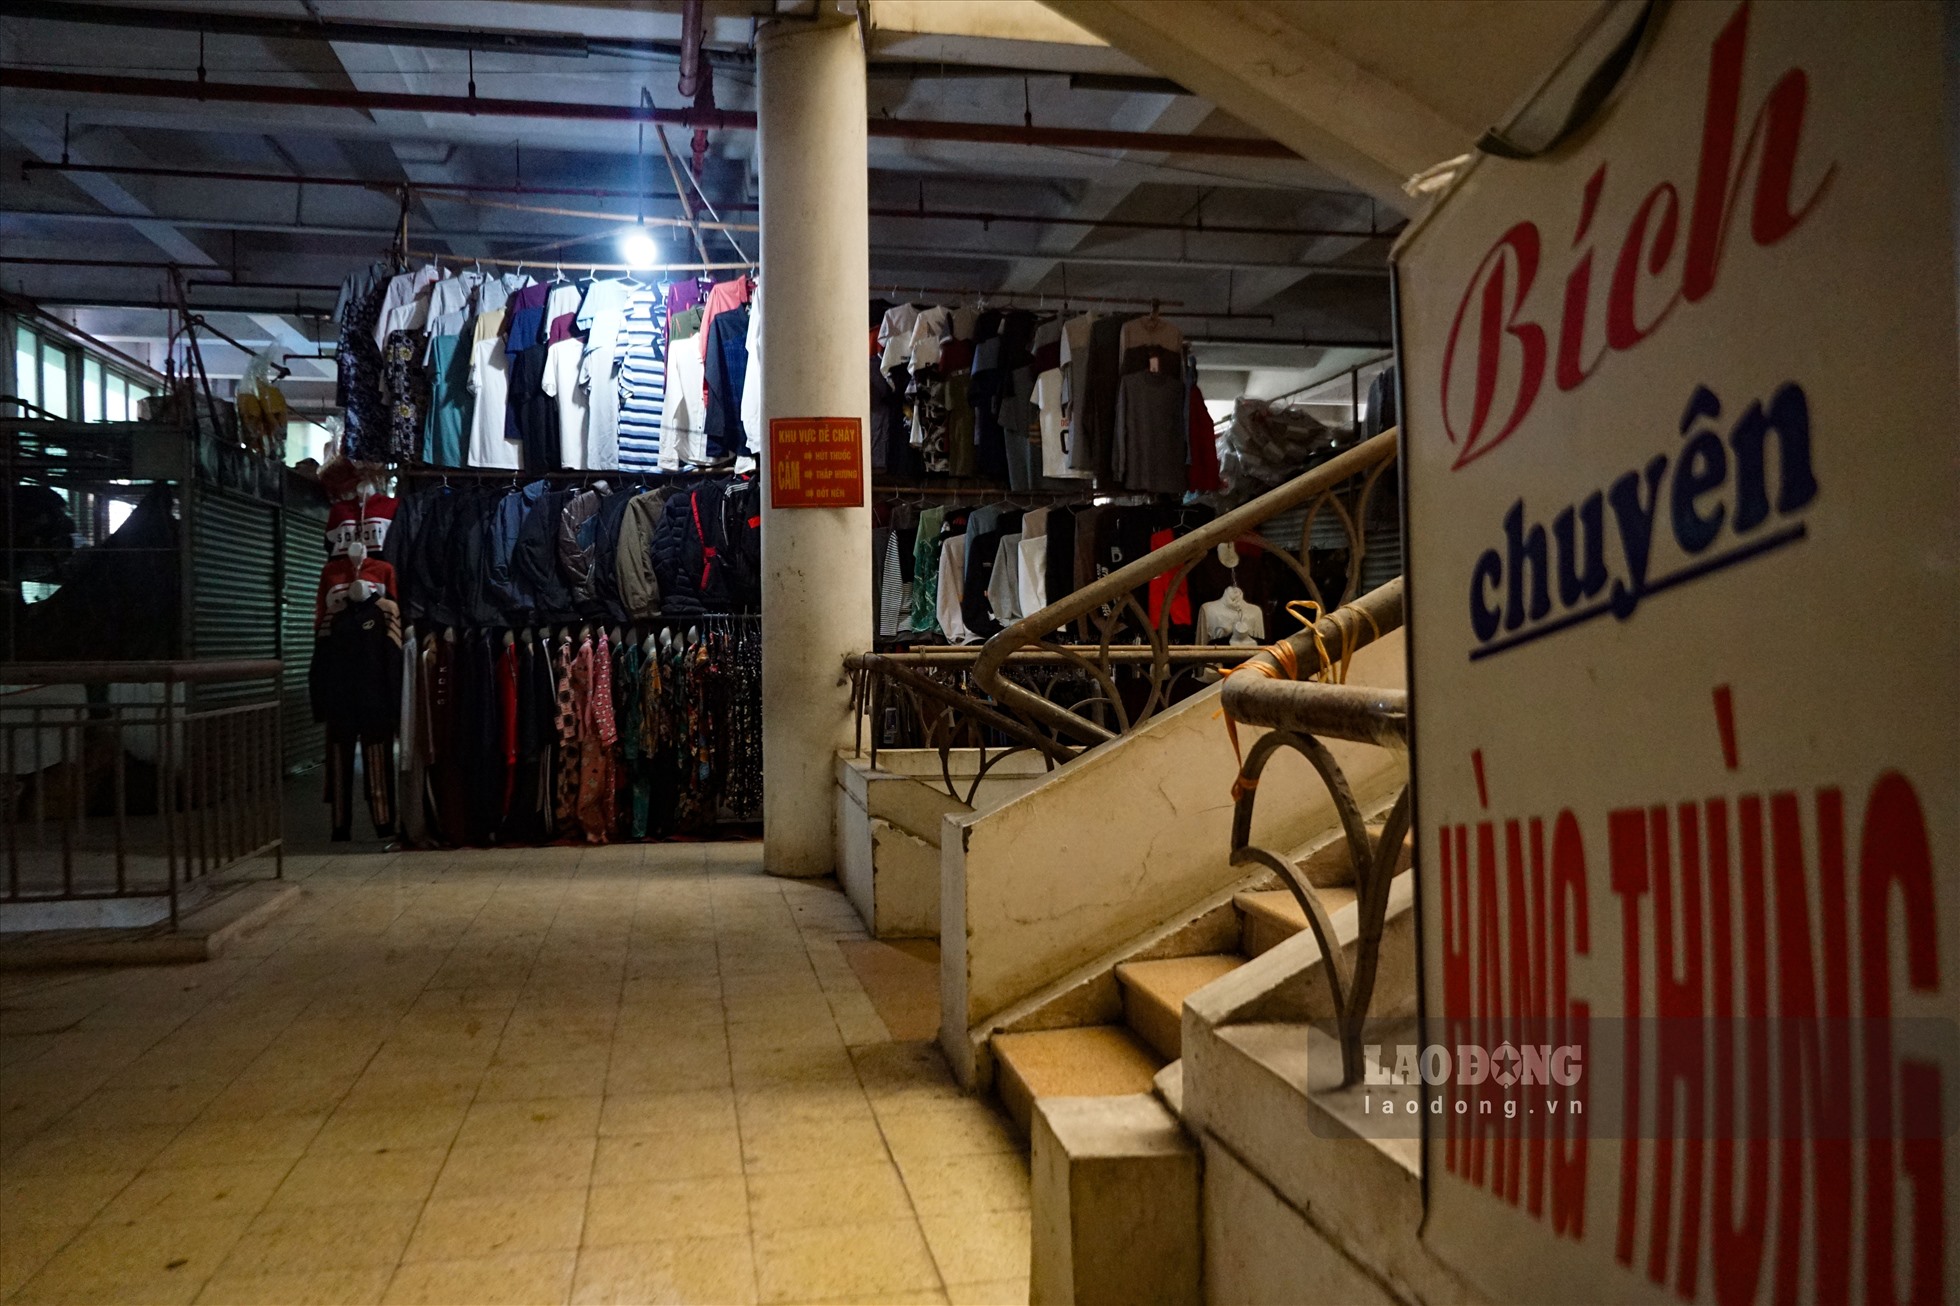 Trên tầng 2 là khu vực buôn quán quần áo, dày dép. Theo tìm hiểu, các quầy hàng này chủ yếu bán buôn và bán cho các mối khách thân quen và hiếm khi có khách mới tìm tới mua.